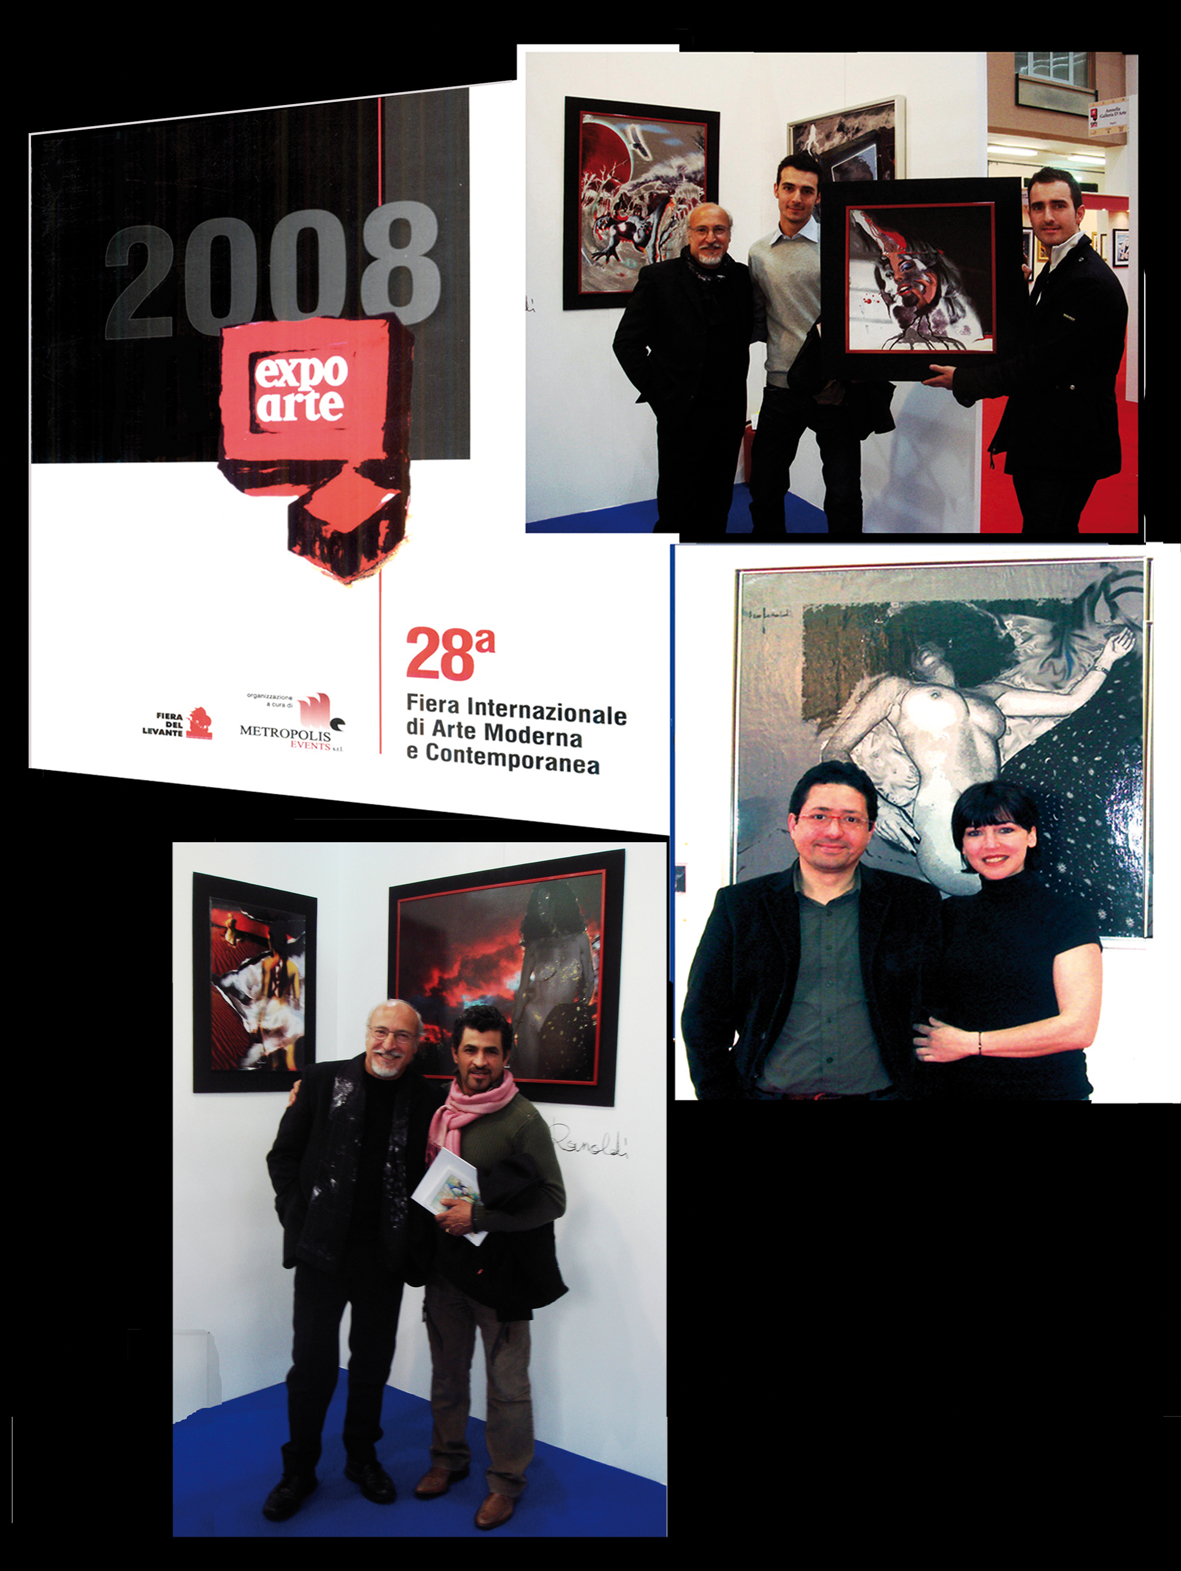 Ezio Ranaldi – expo arte 2008 copia